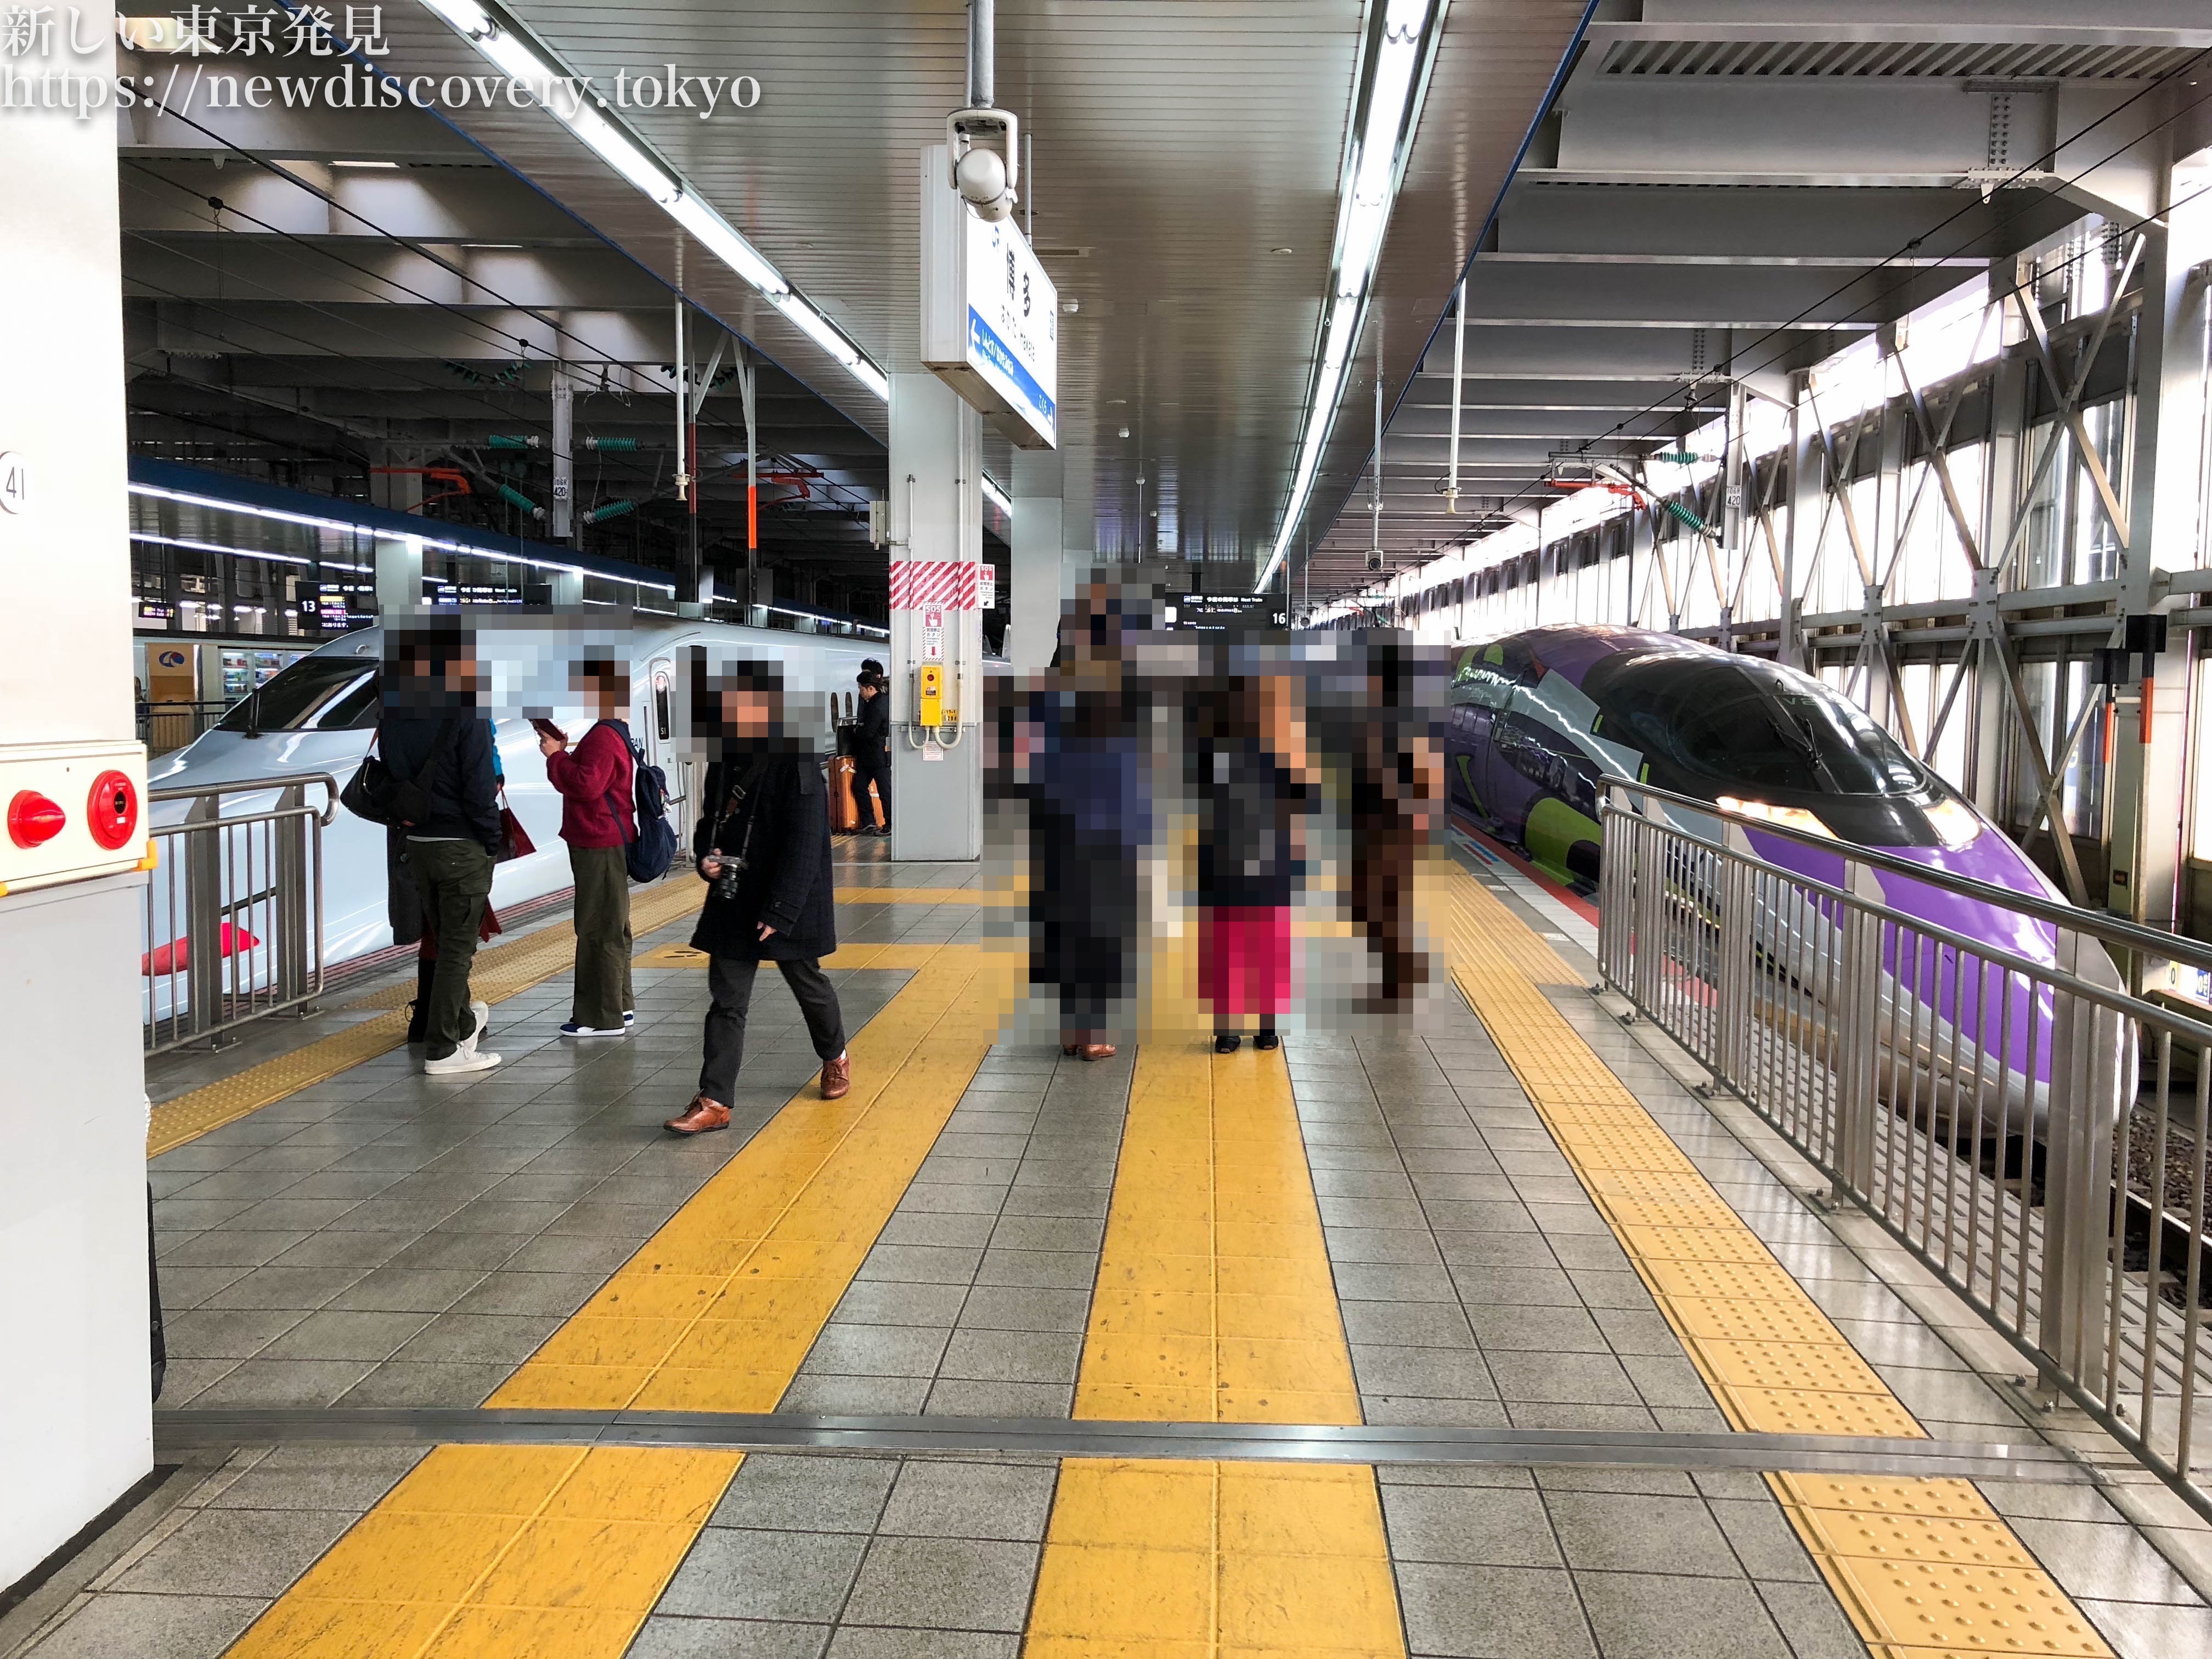 福岡市 博多駅周辺 で 電車好きな子供を連れて行くべき子鉄スポット トレインビュー 7選をご紹介 子連れ パパママを応援する情報チャンネル 新しい東京発見